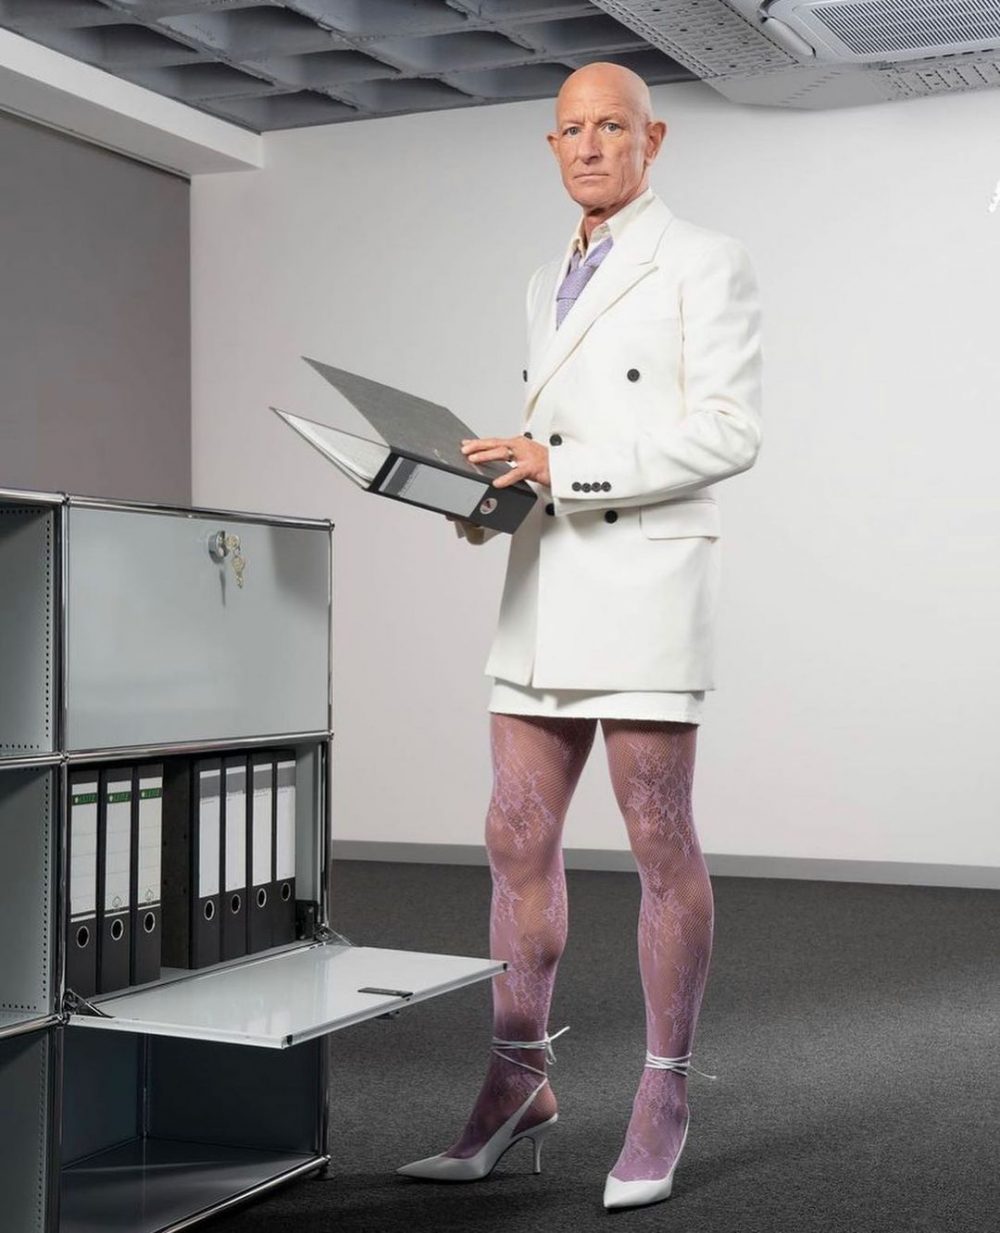 Mark Bryan es un ingeniero robótico heterosexual, de 62 años y residente en Berlín, que hace 5 años comenzó a vestir con tacones de aguja y faldas para ir a trabajar sencillamente porque le gusta vestir así.